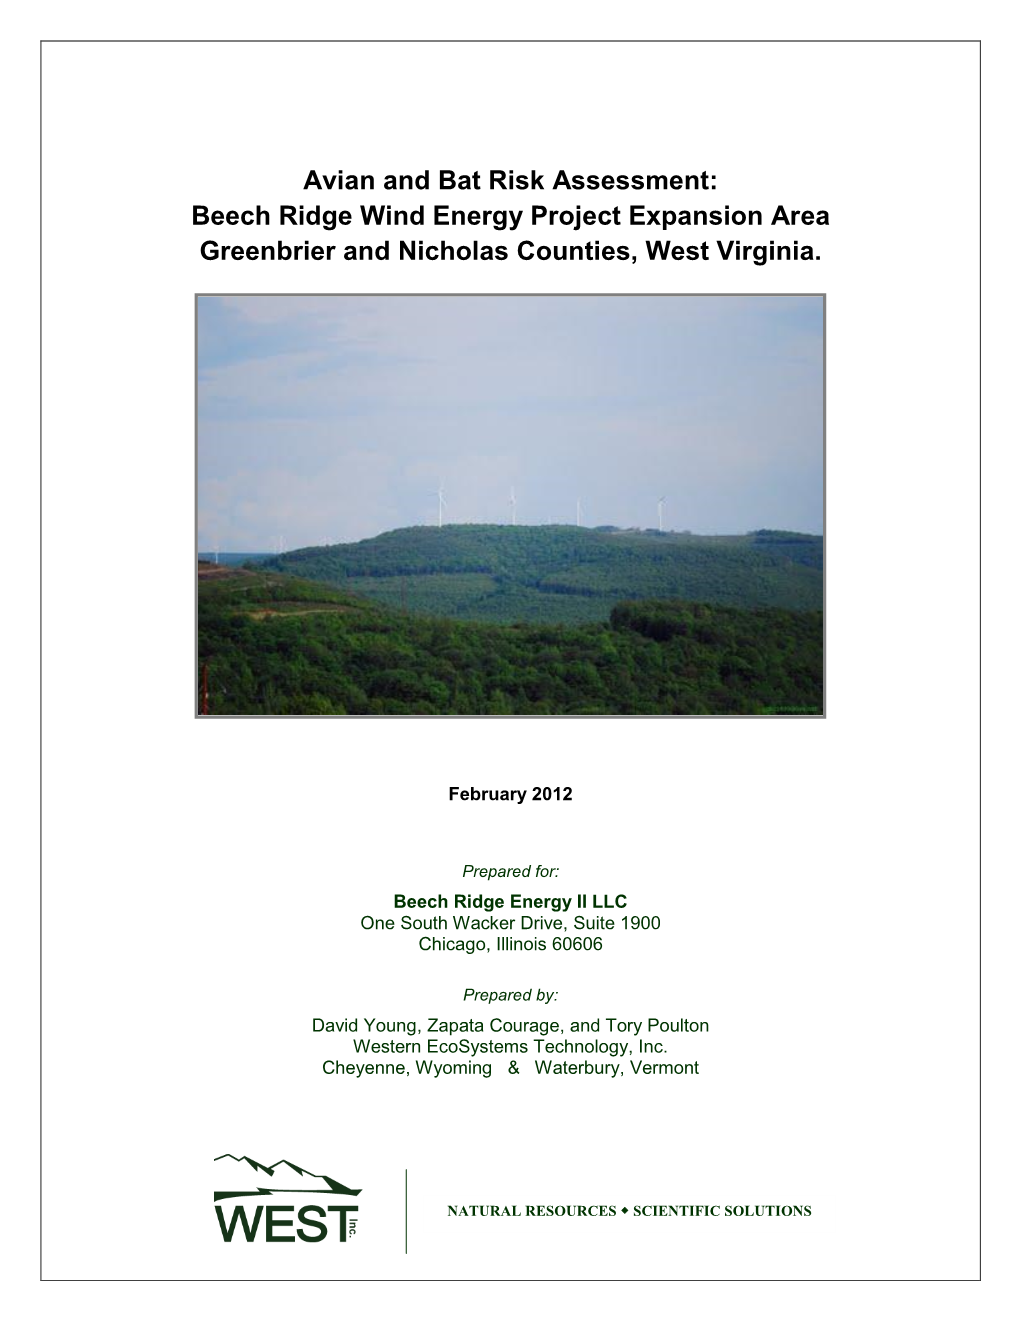 Avian and Bat Risk Assessment For